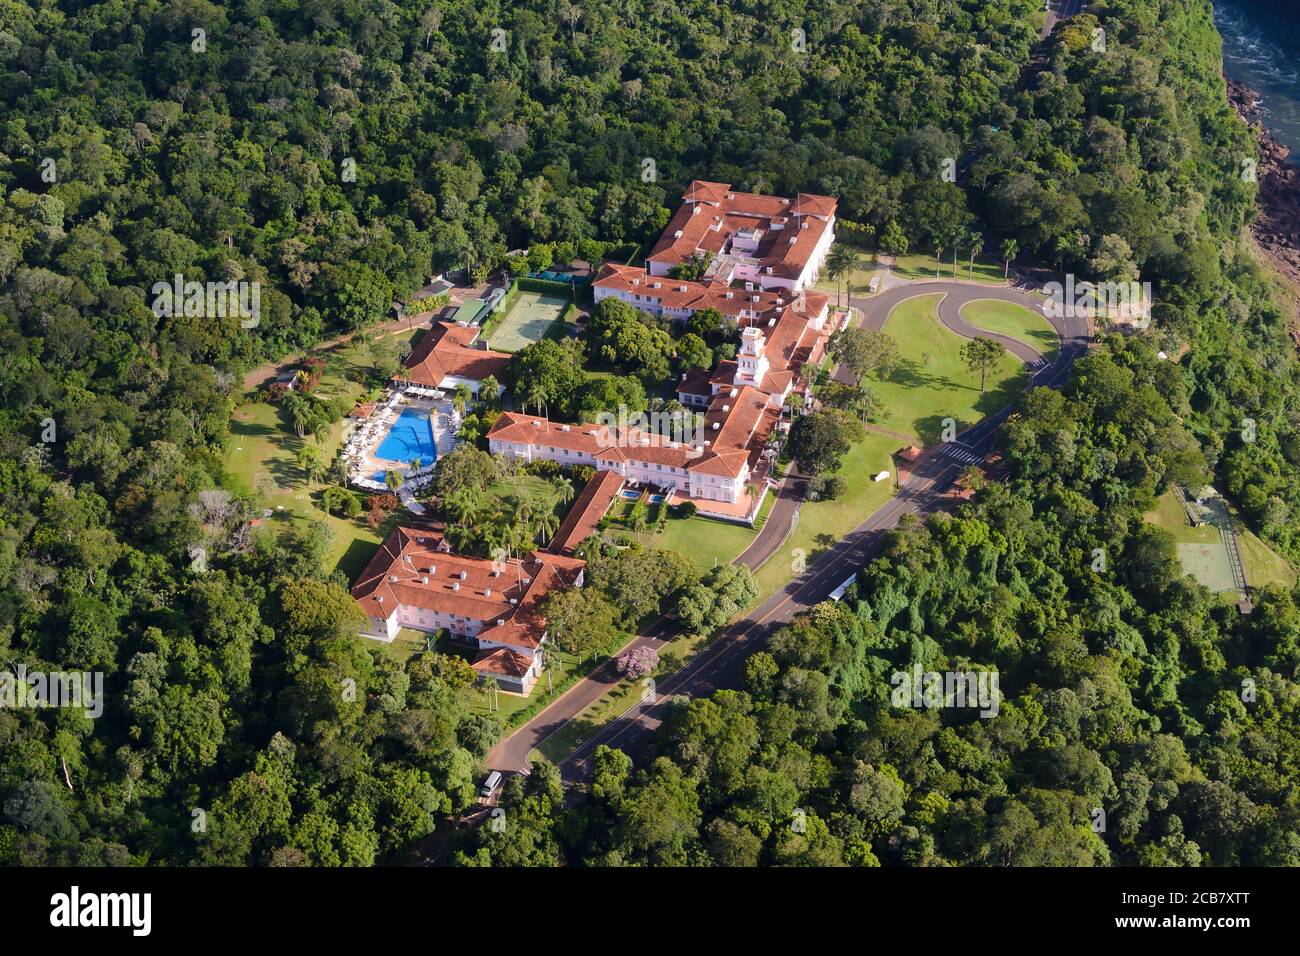 Vue aérienne de Belmond Hotel das Cataratas propriété de luxe à l'intérieur du parc national d'Iguassu, Brésil. Bâtiment de style colonial portugais. Banque D'Images